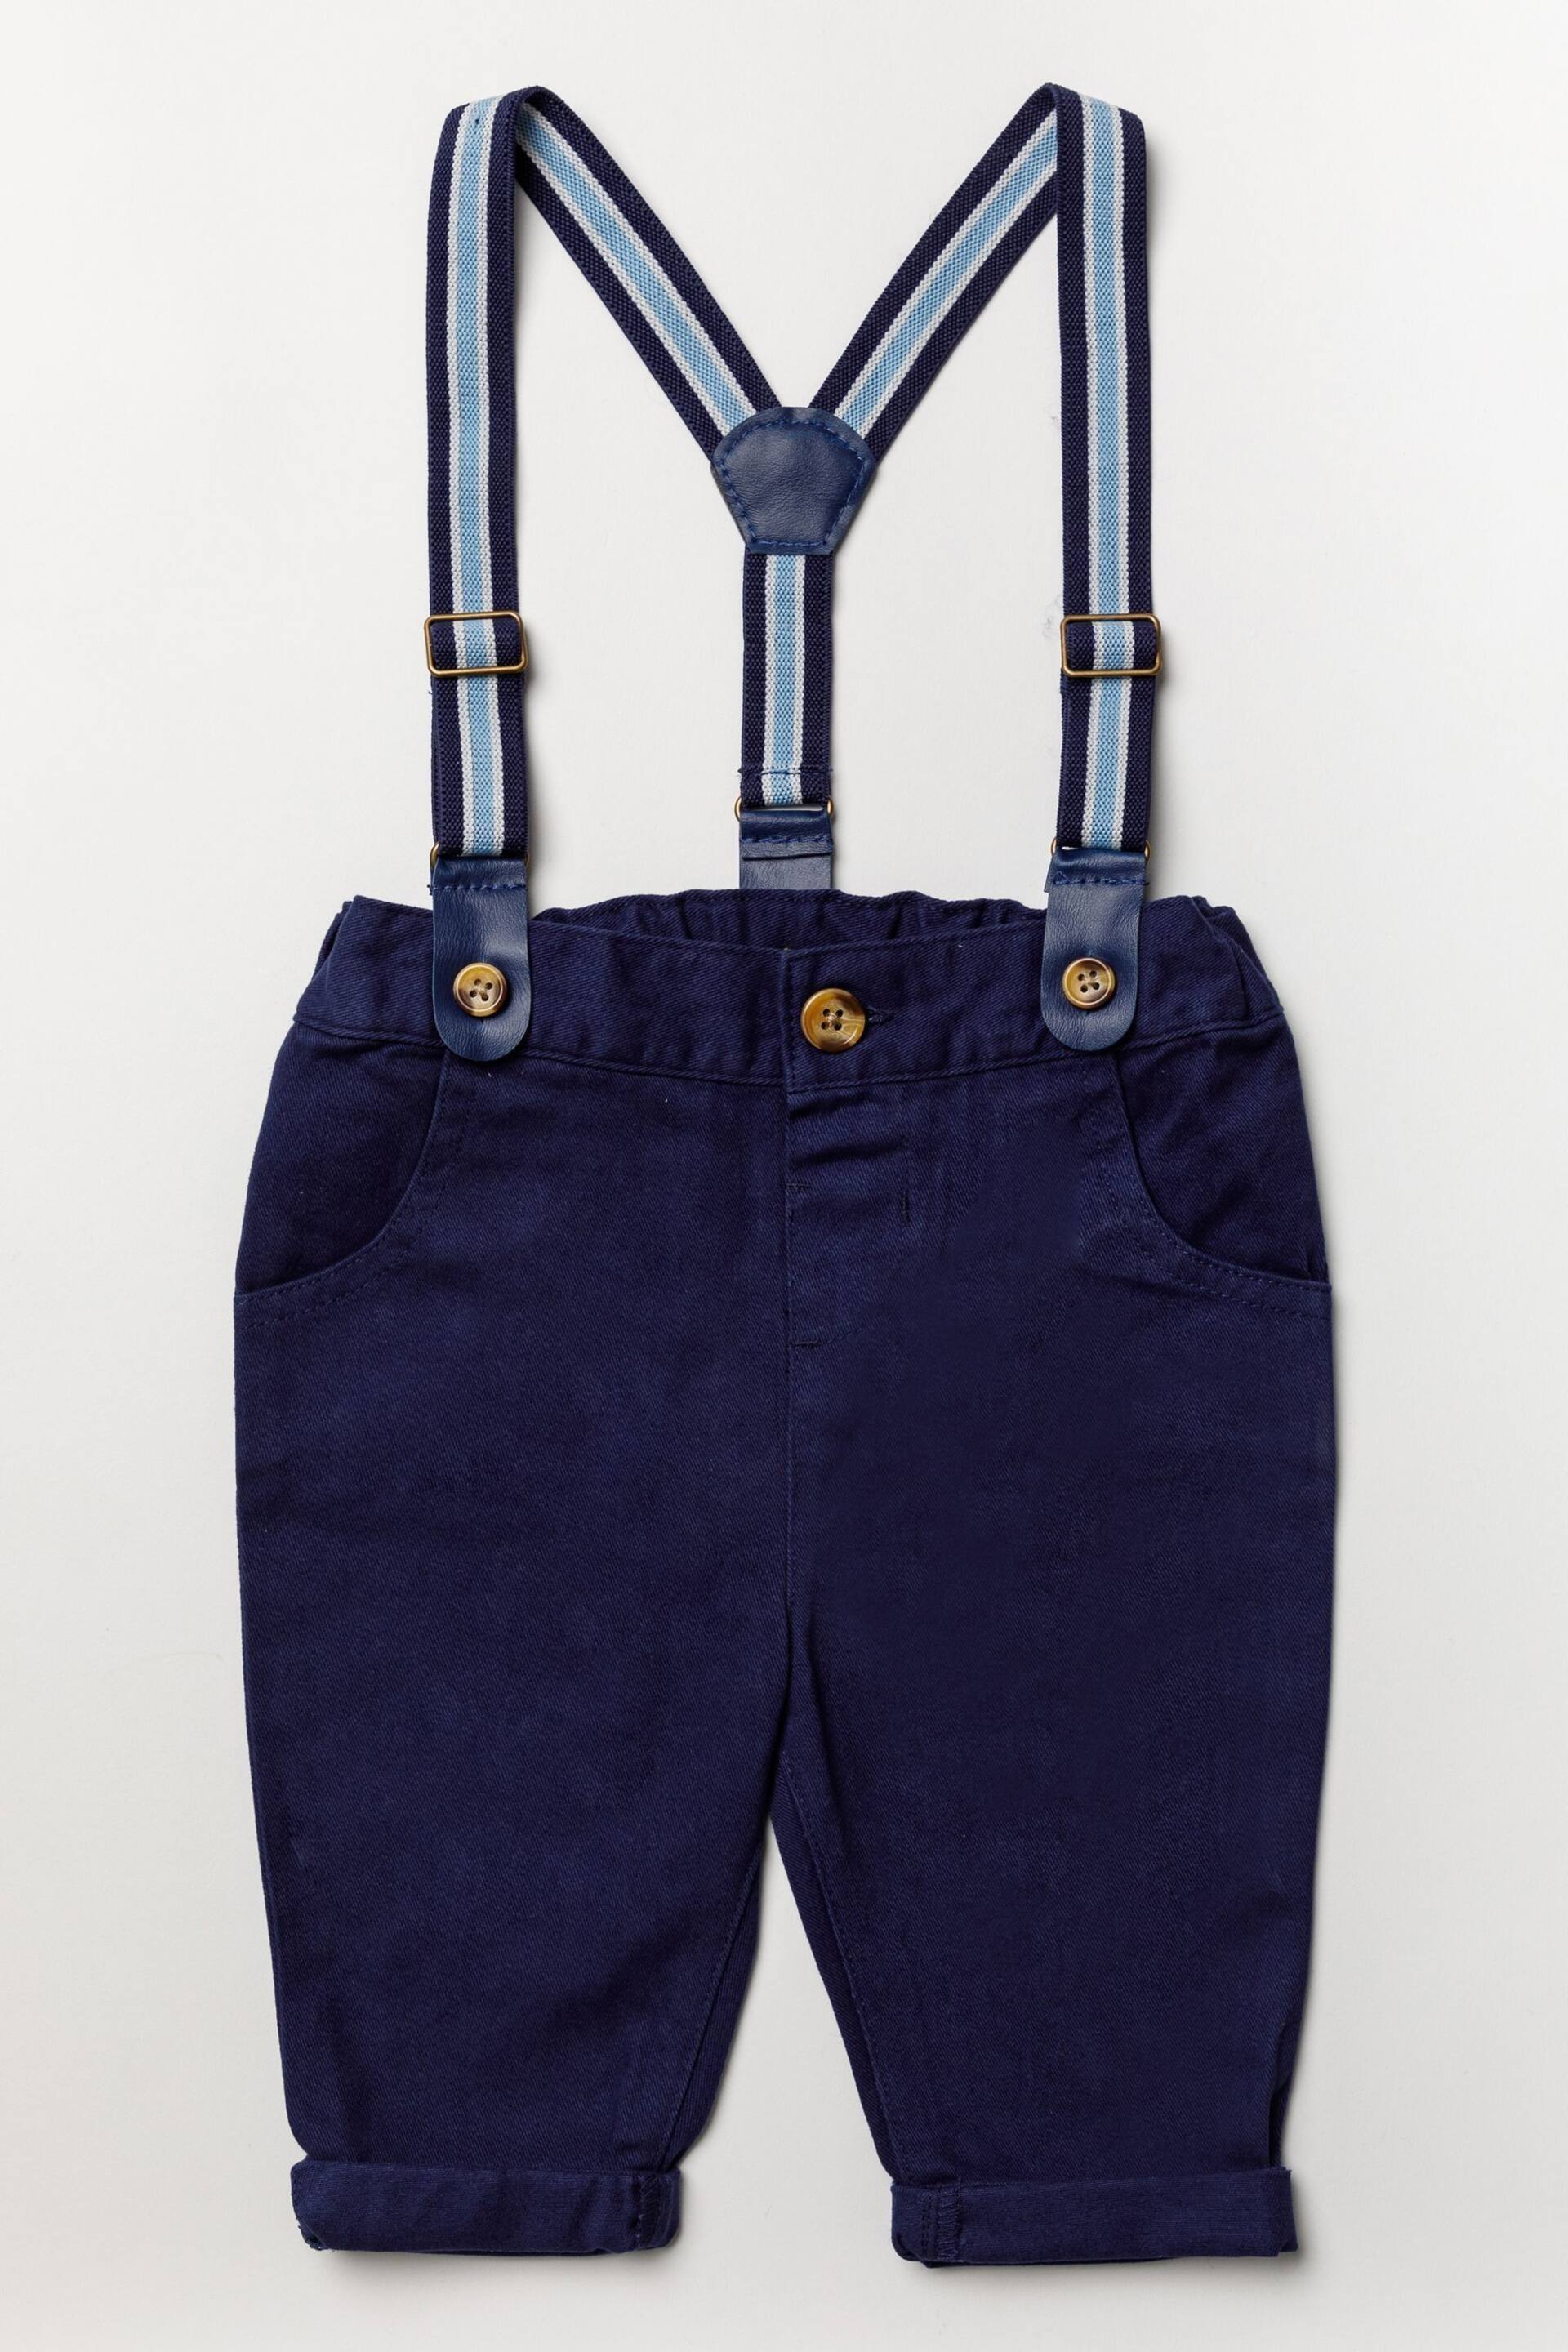 Little Gent Blue Shirt Bodysuit, Bowtie, Trouser And Braces 3 Piece Baby Set - Image 3 of 5